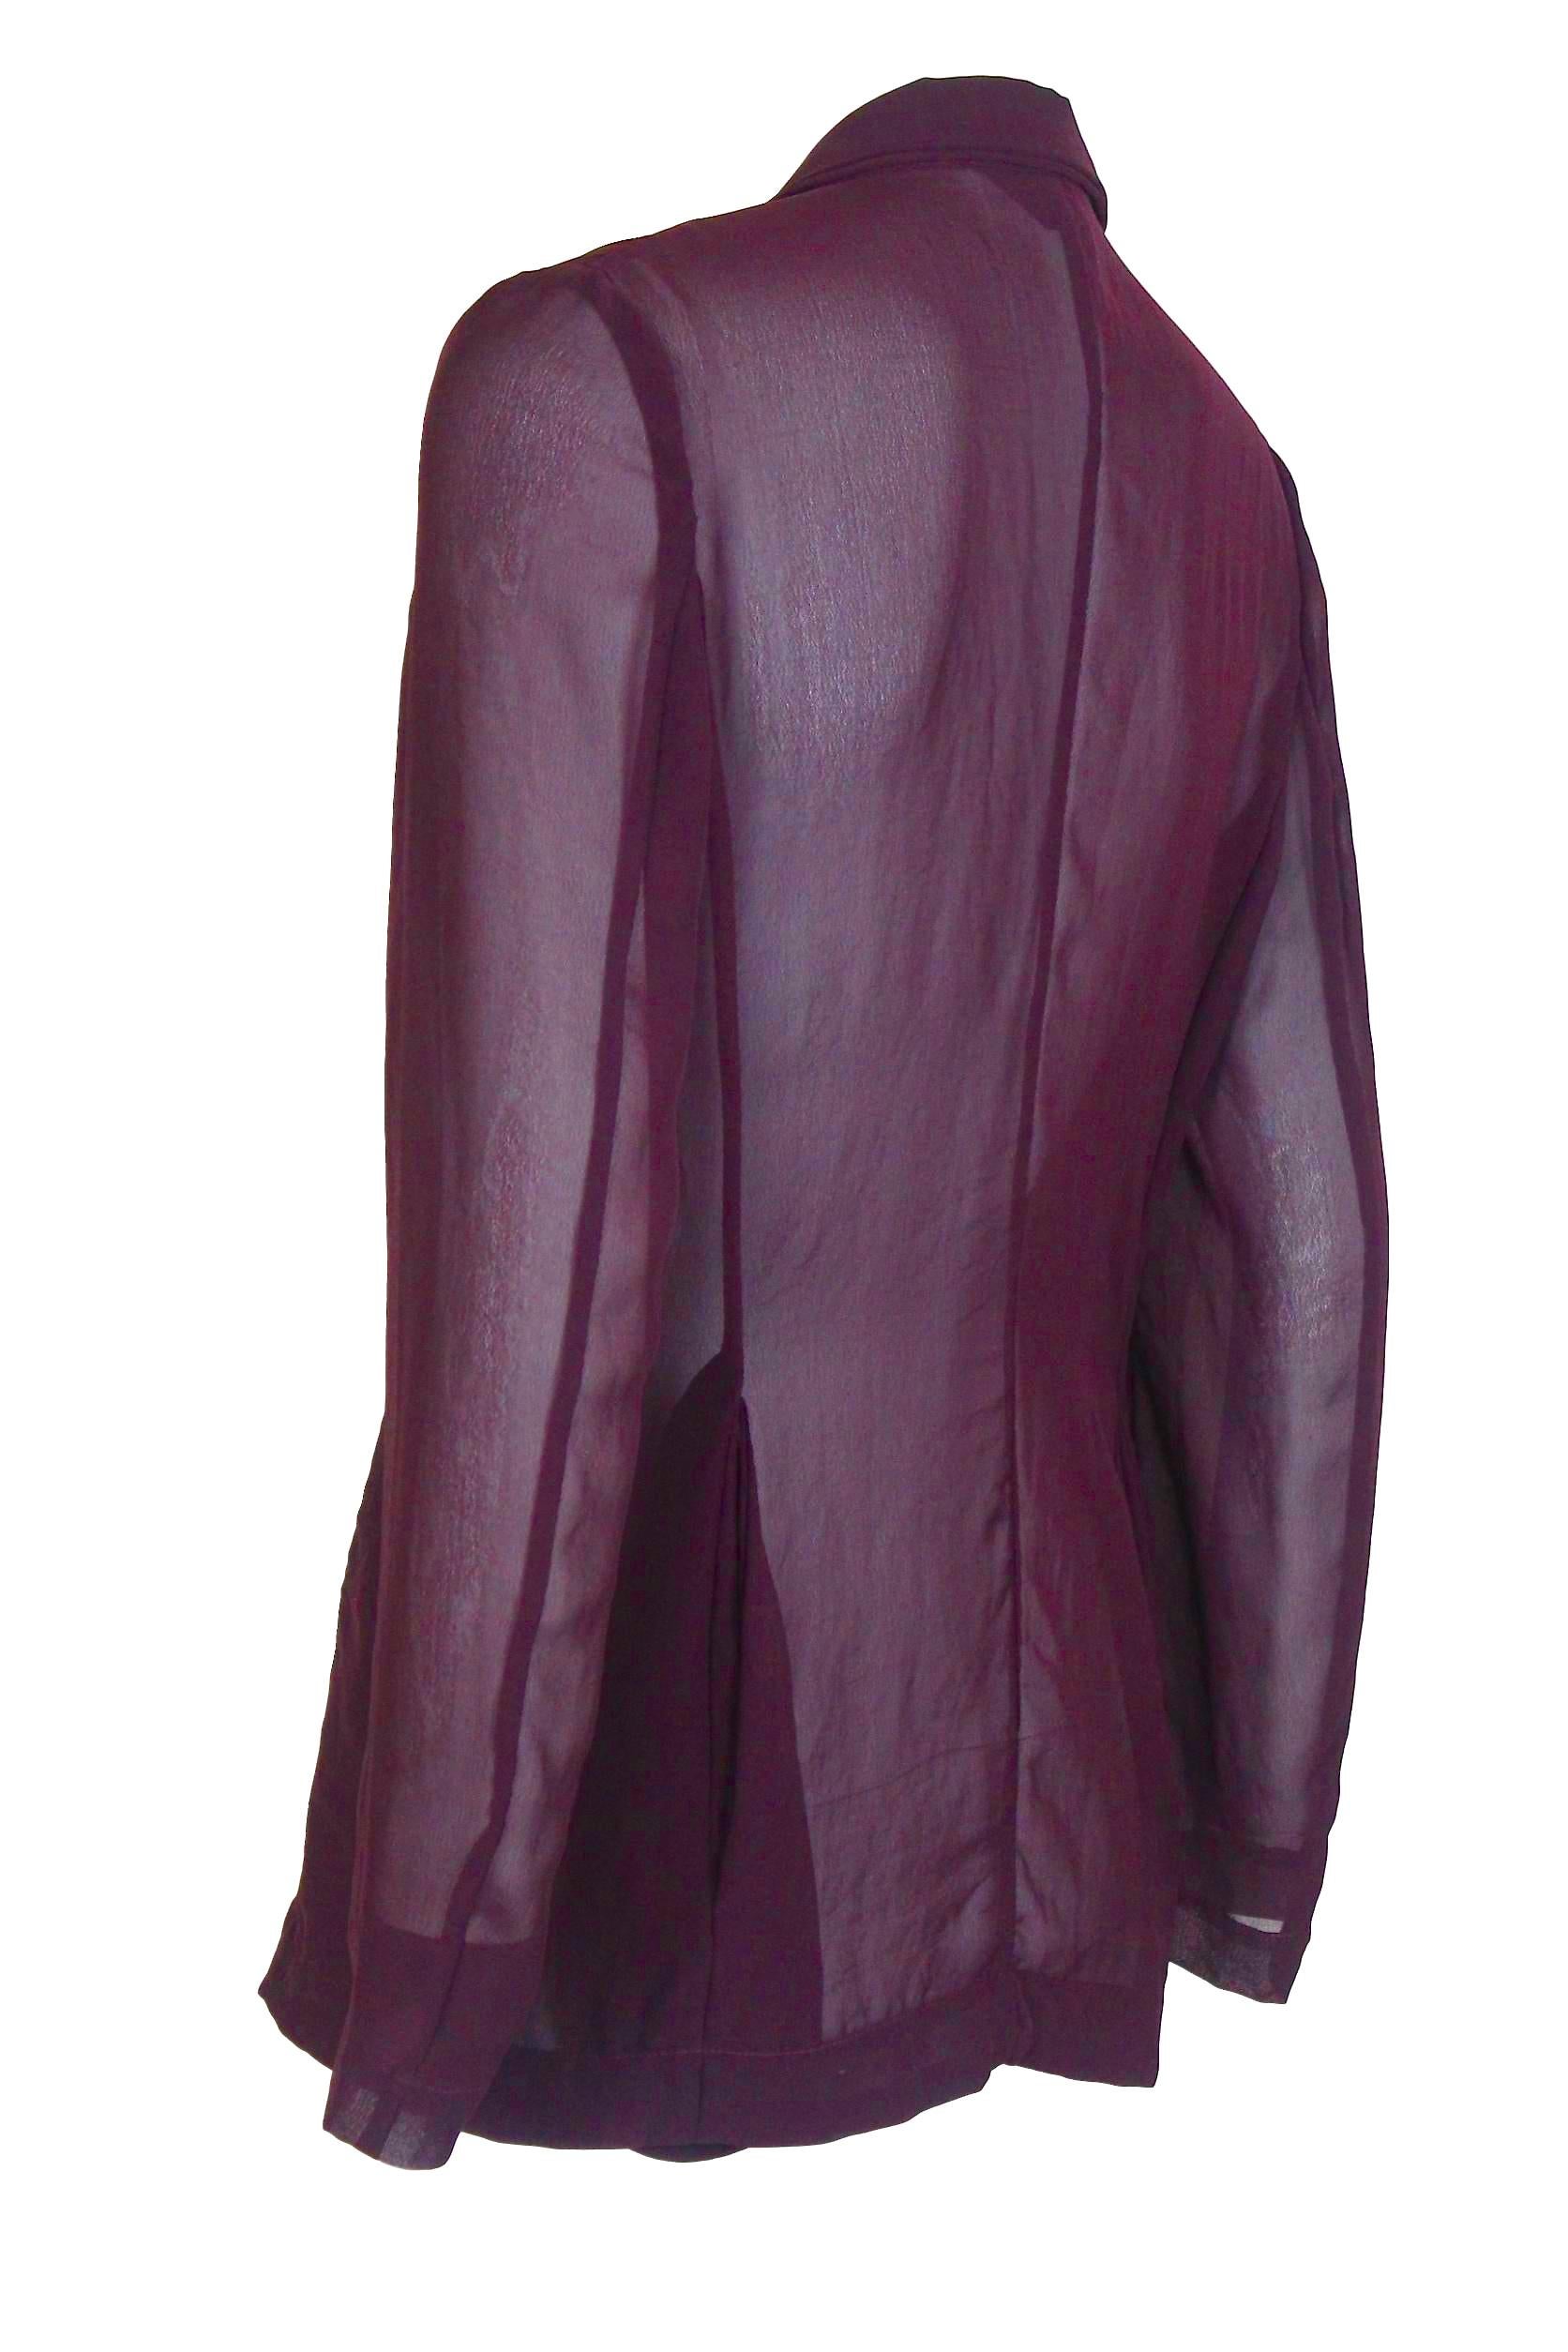 Women's Comme des Garcons AD 1992 Semi Transparent Voile Jacket For Sale